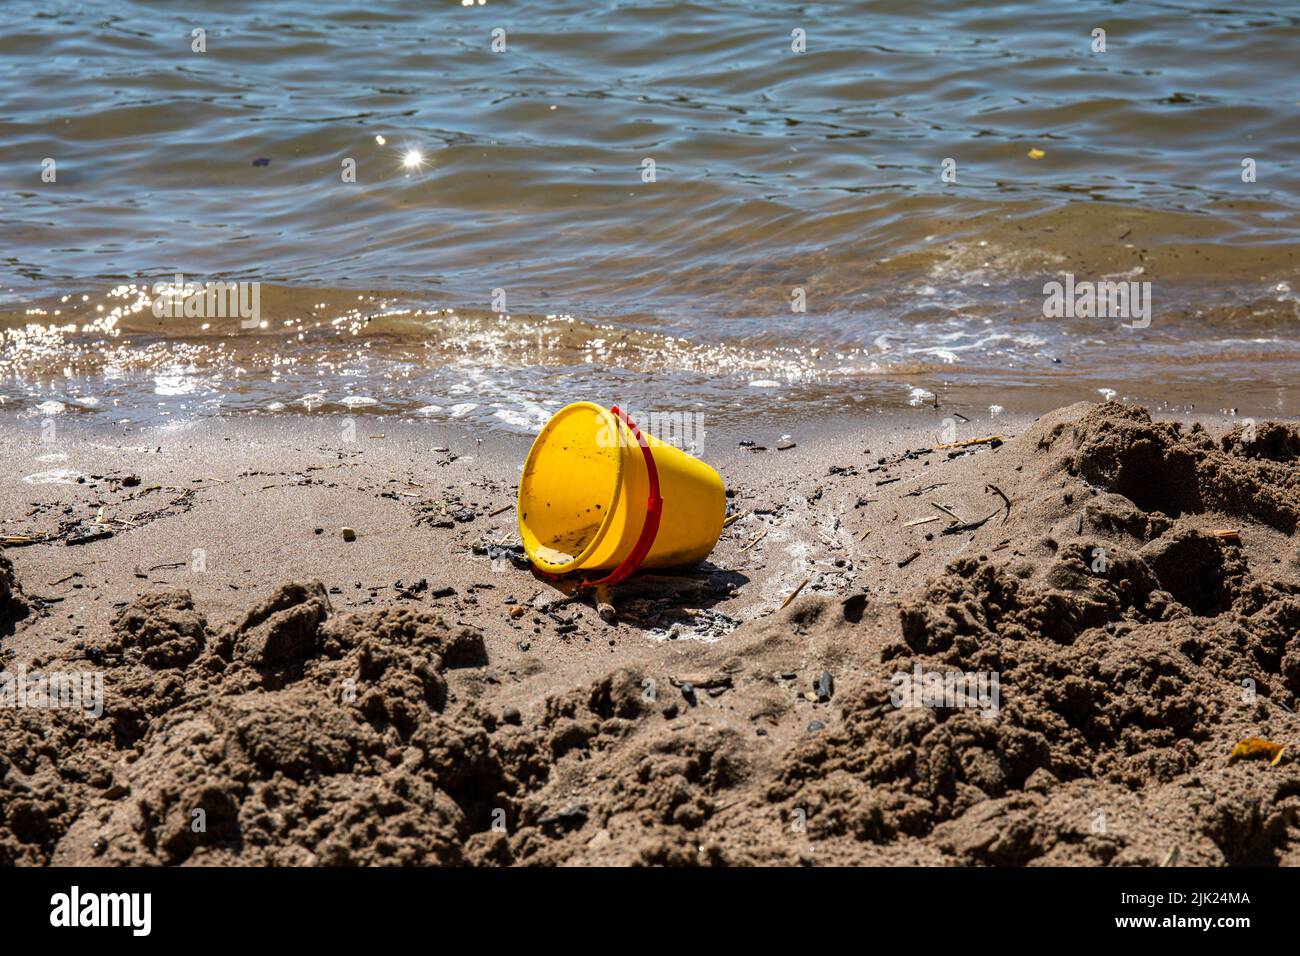 Cubo de playa de plástico abandonado y juguete de arena en la playa Foto de stock